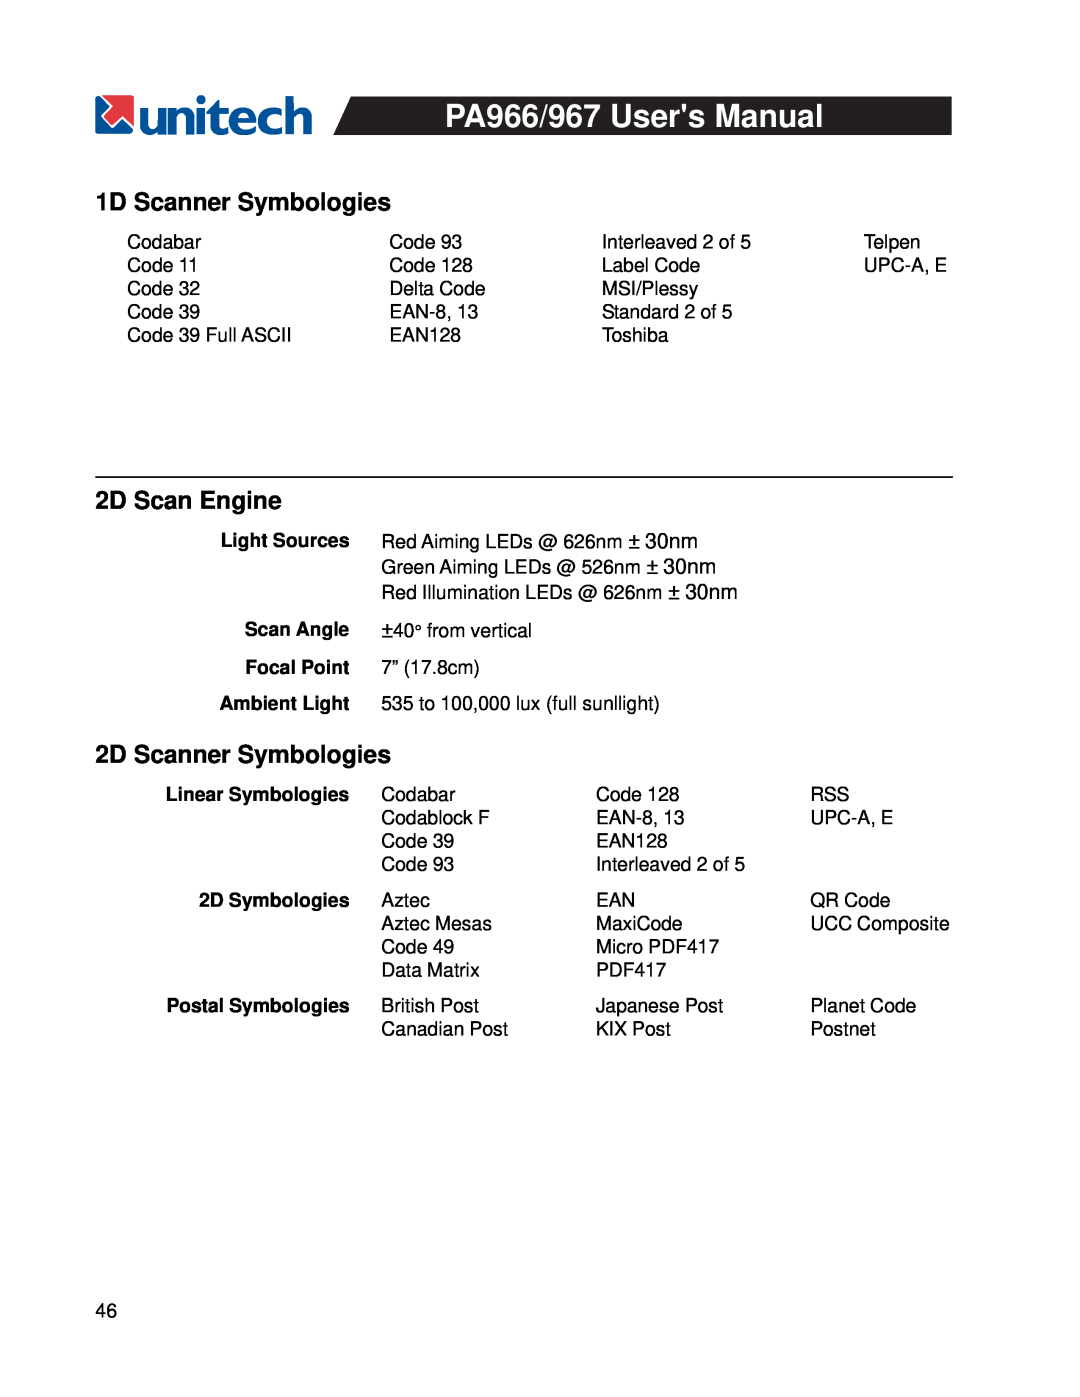 Unitech PA967 1D Scanner Symbologies, 2D Scan Engine, 2D Scanner Symbologies, Focal Point 7” 17.8cm, Linear Symbologies 